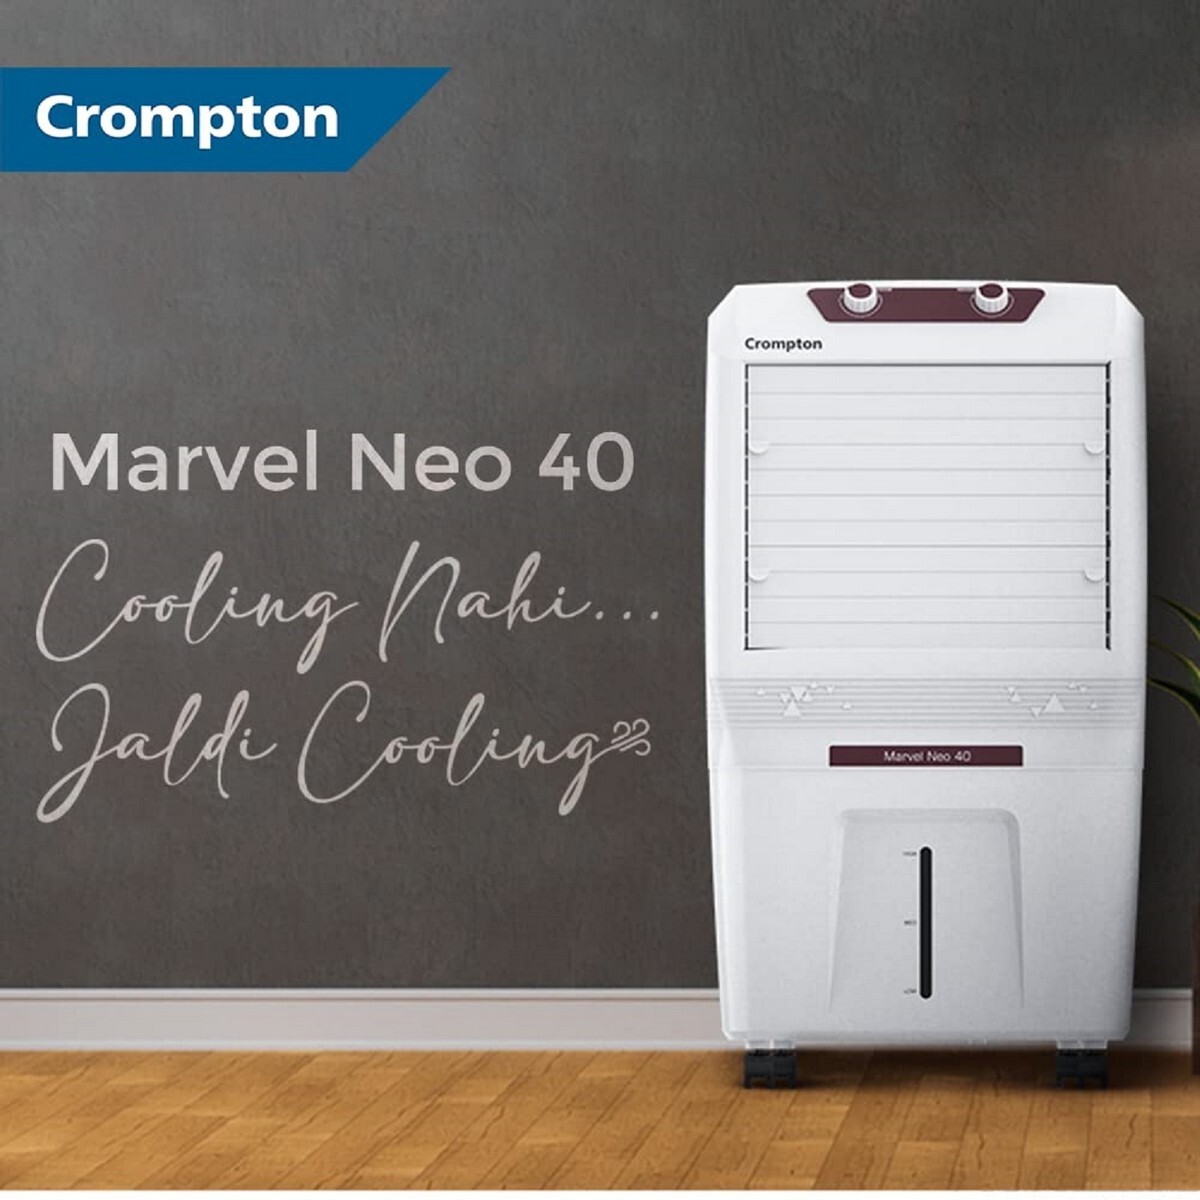 Crompton Air Cooler MARVELNEO 40L